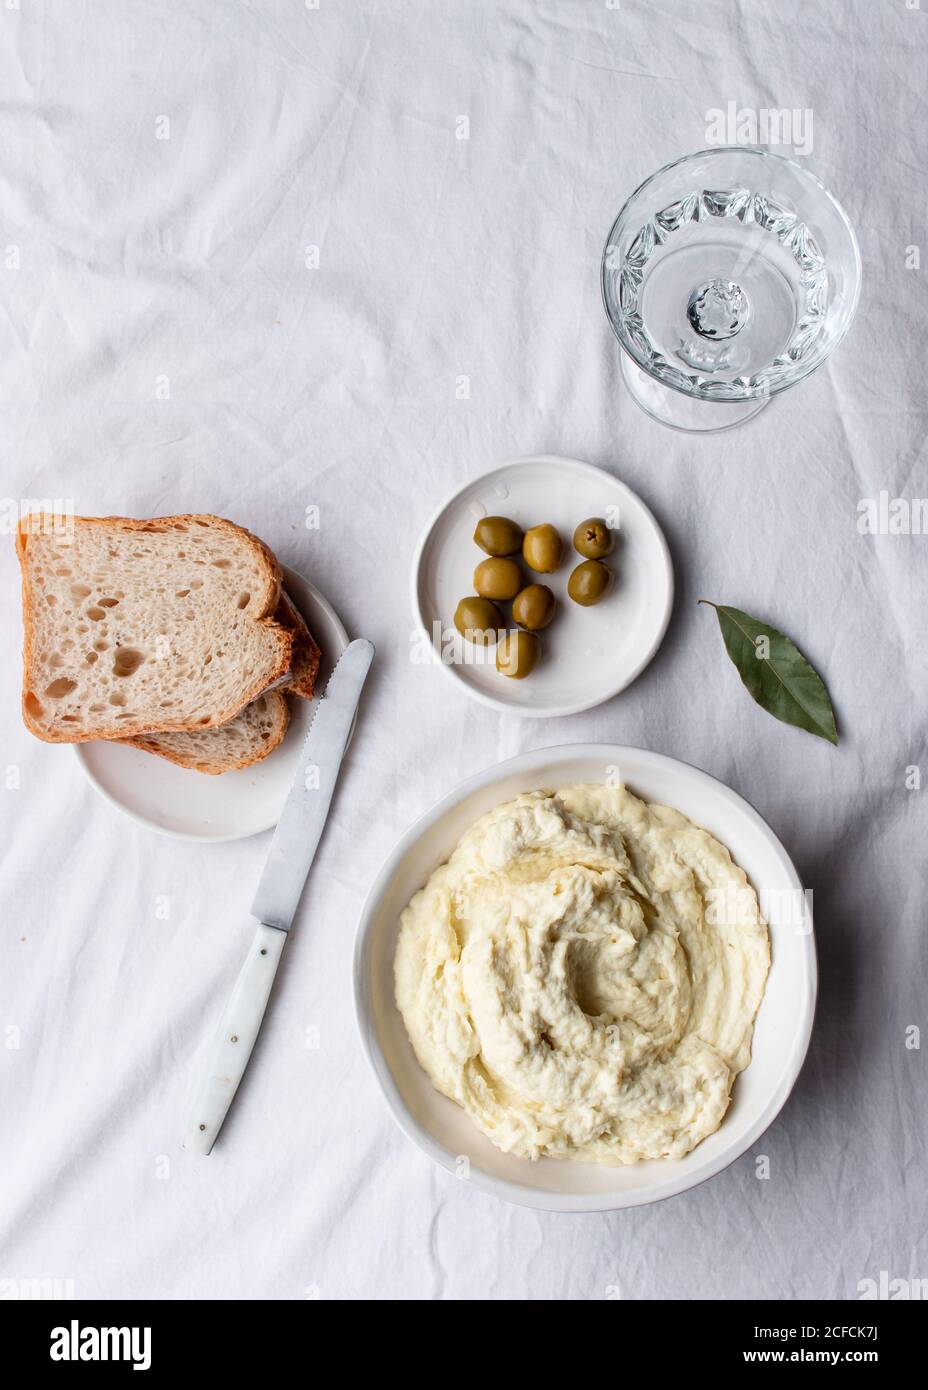 Da sopra ciotola con brandade di merluzzo posto vicino alle olive, fette di pane e foglie di alloro su un tavolo da cucina sfondo bianco Foto Stock